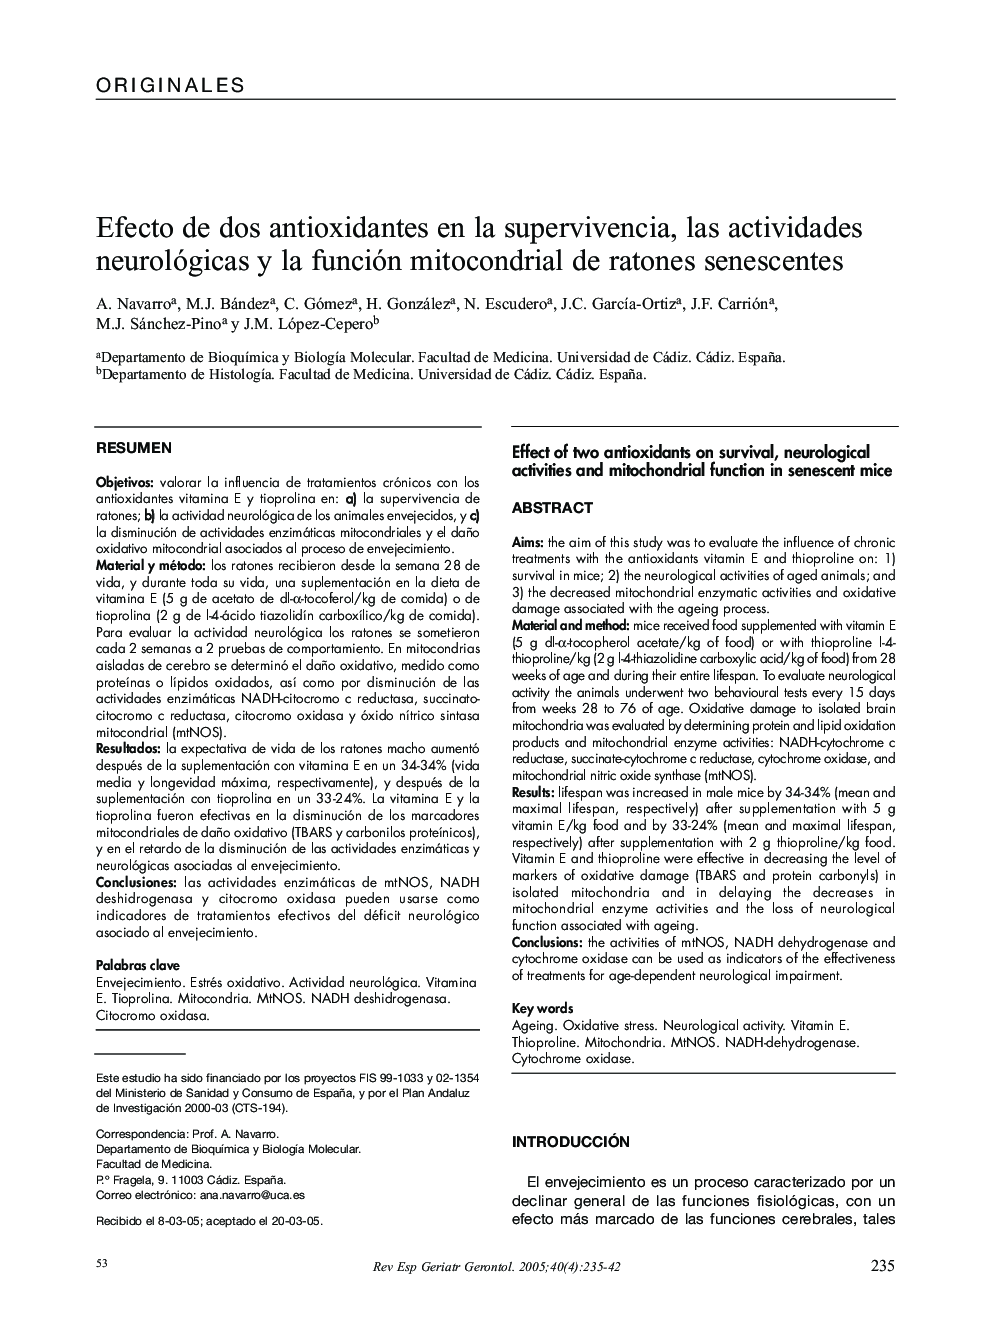 Efecto de dos antioxidantes en la supervivencia, las actividades neurológicas y la función mitocondrial de ratones senescentes